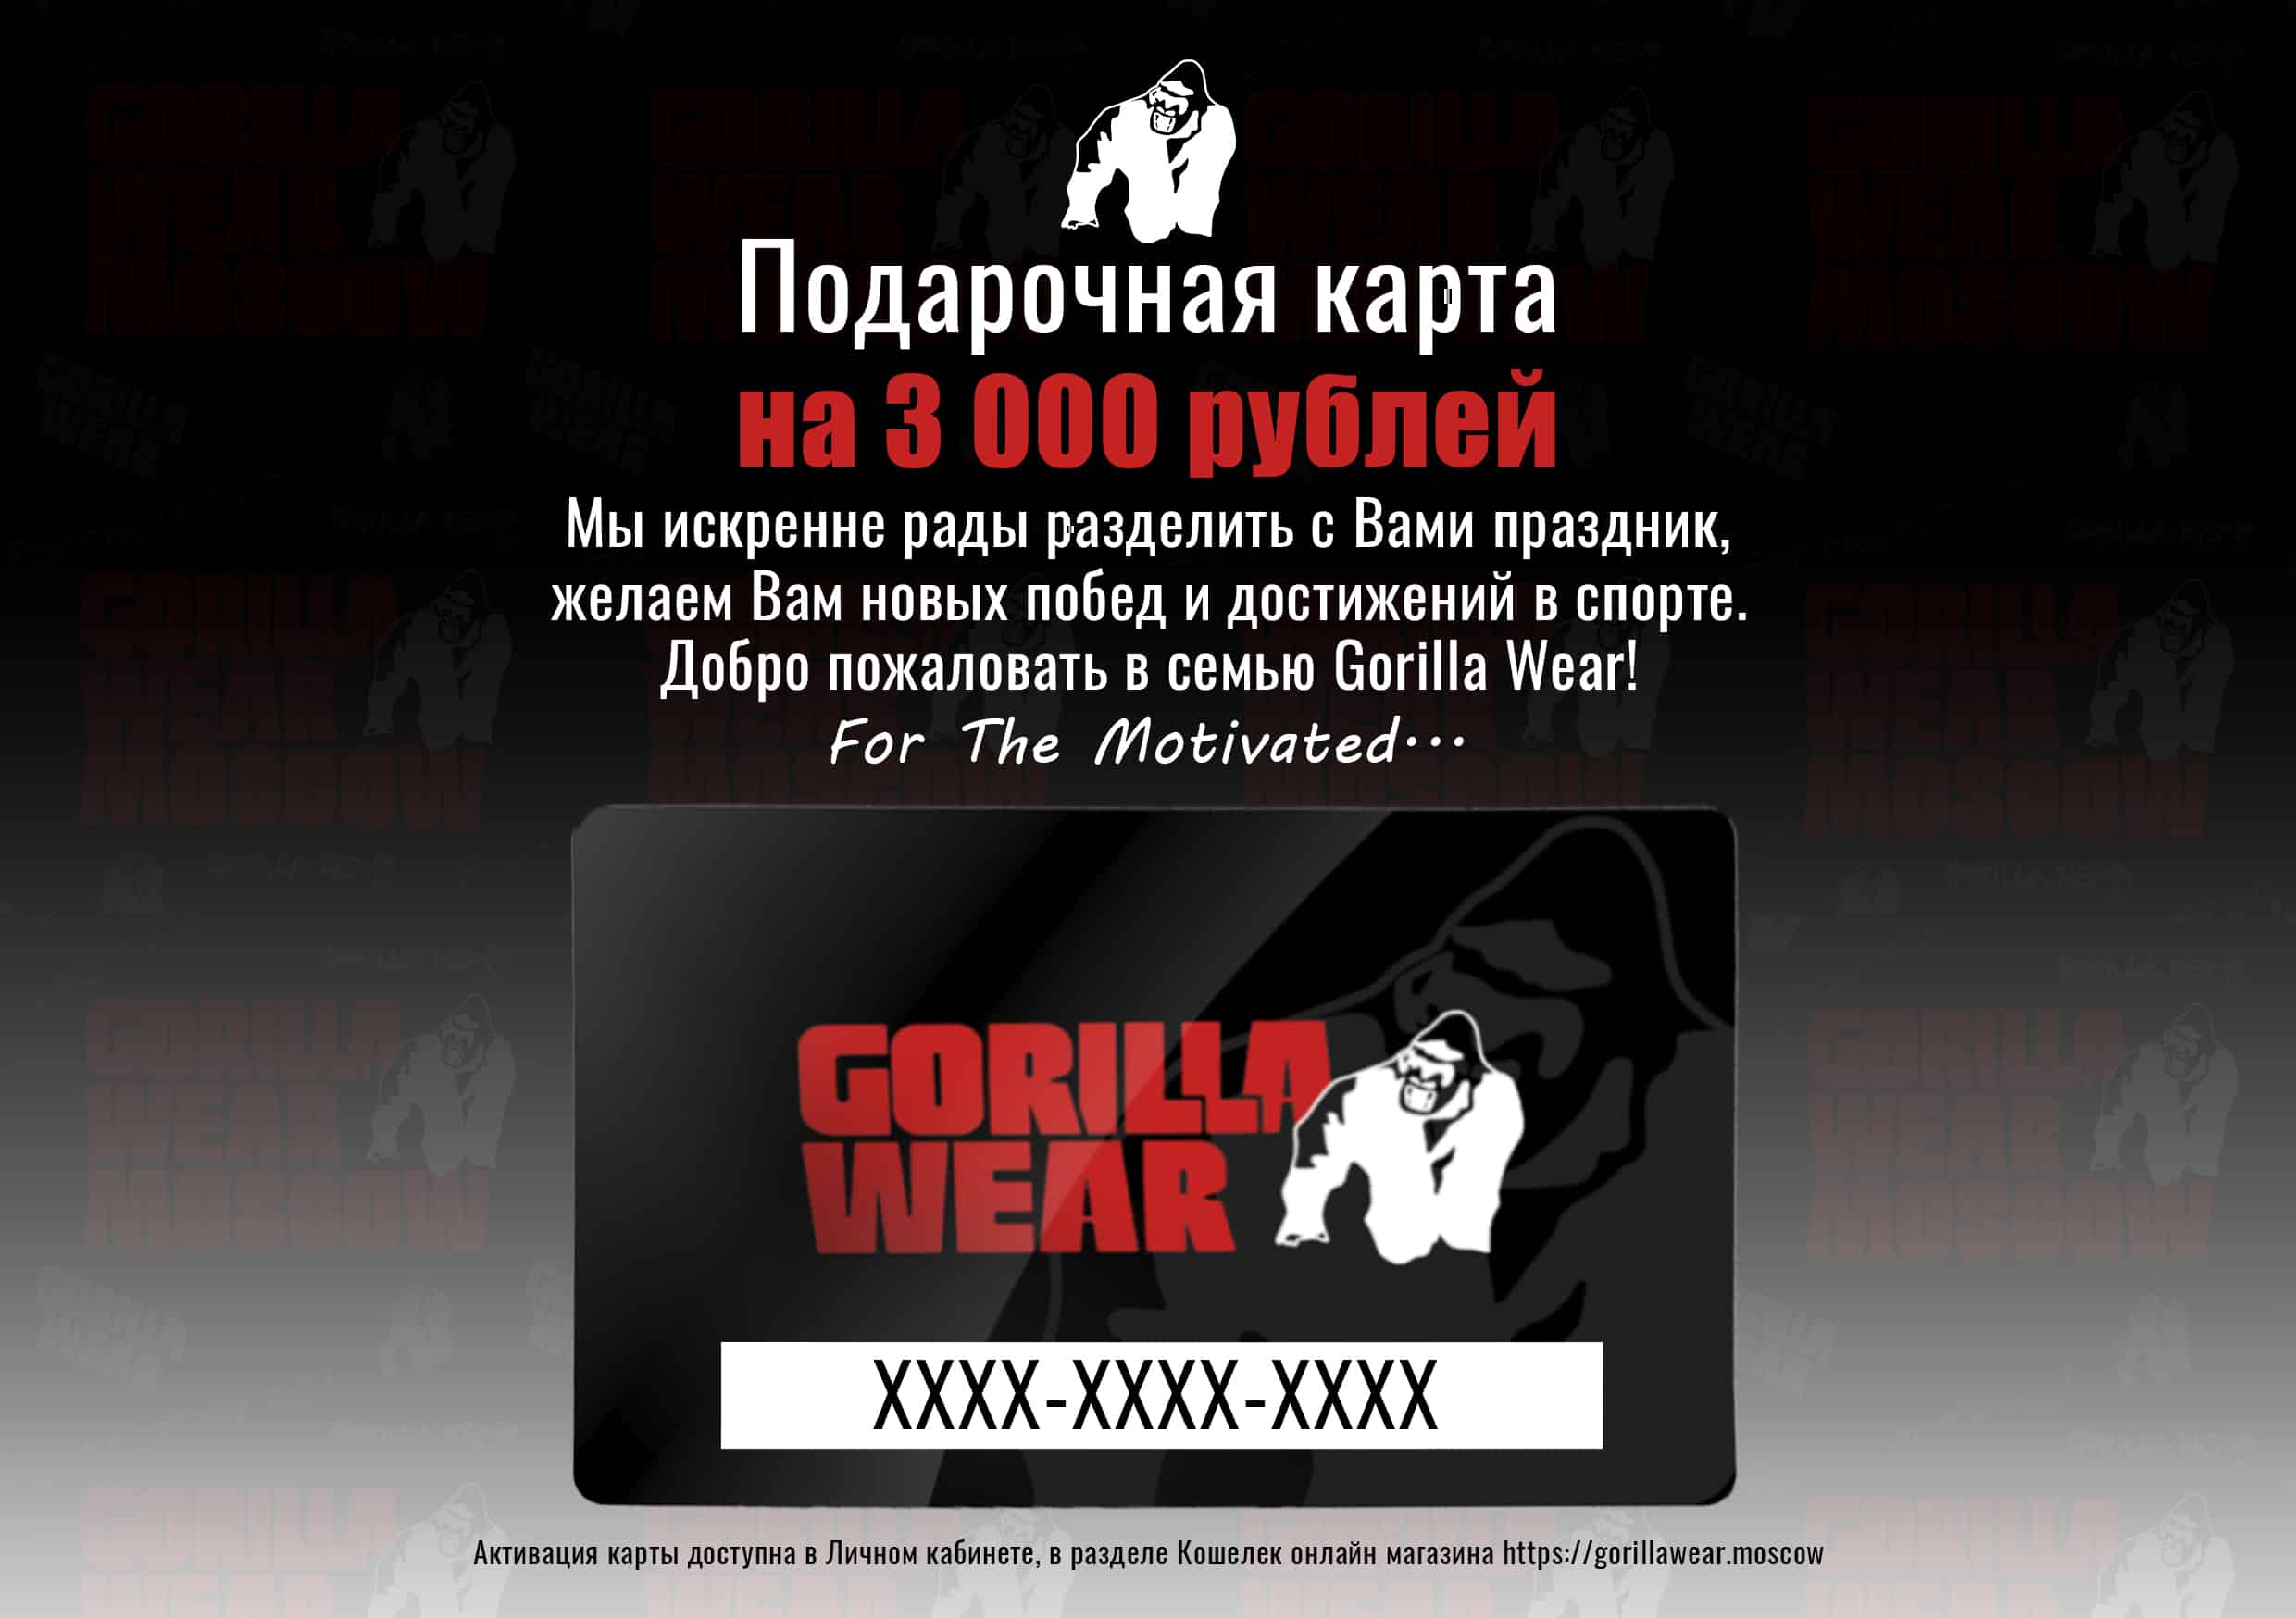 Подарочная карта Gorilla Wear на 3000 рублей